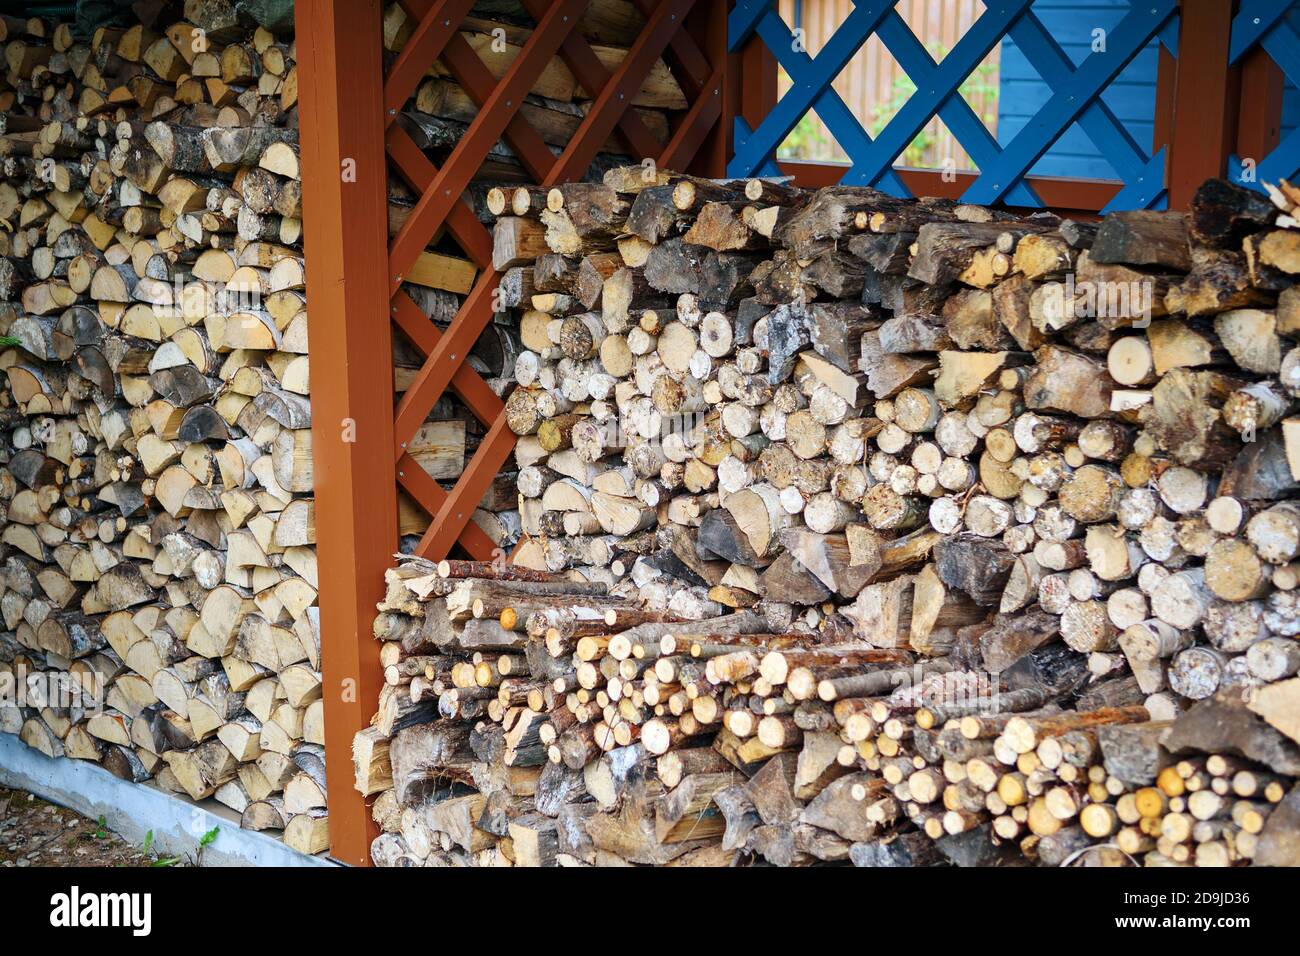 Le bois de chauffage de diverses espèces d'arbres est stocké dans le hangar à bois. Concept de vie de pays. Banque D'Images